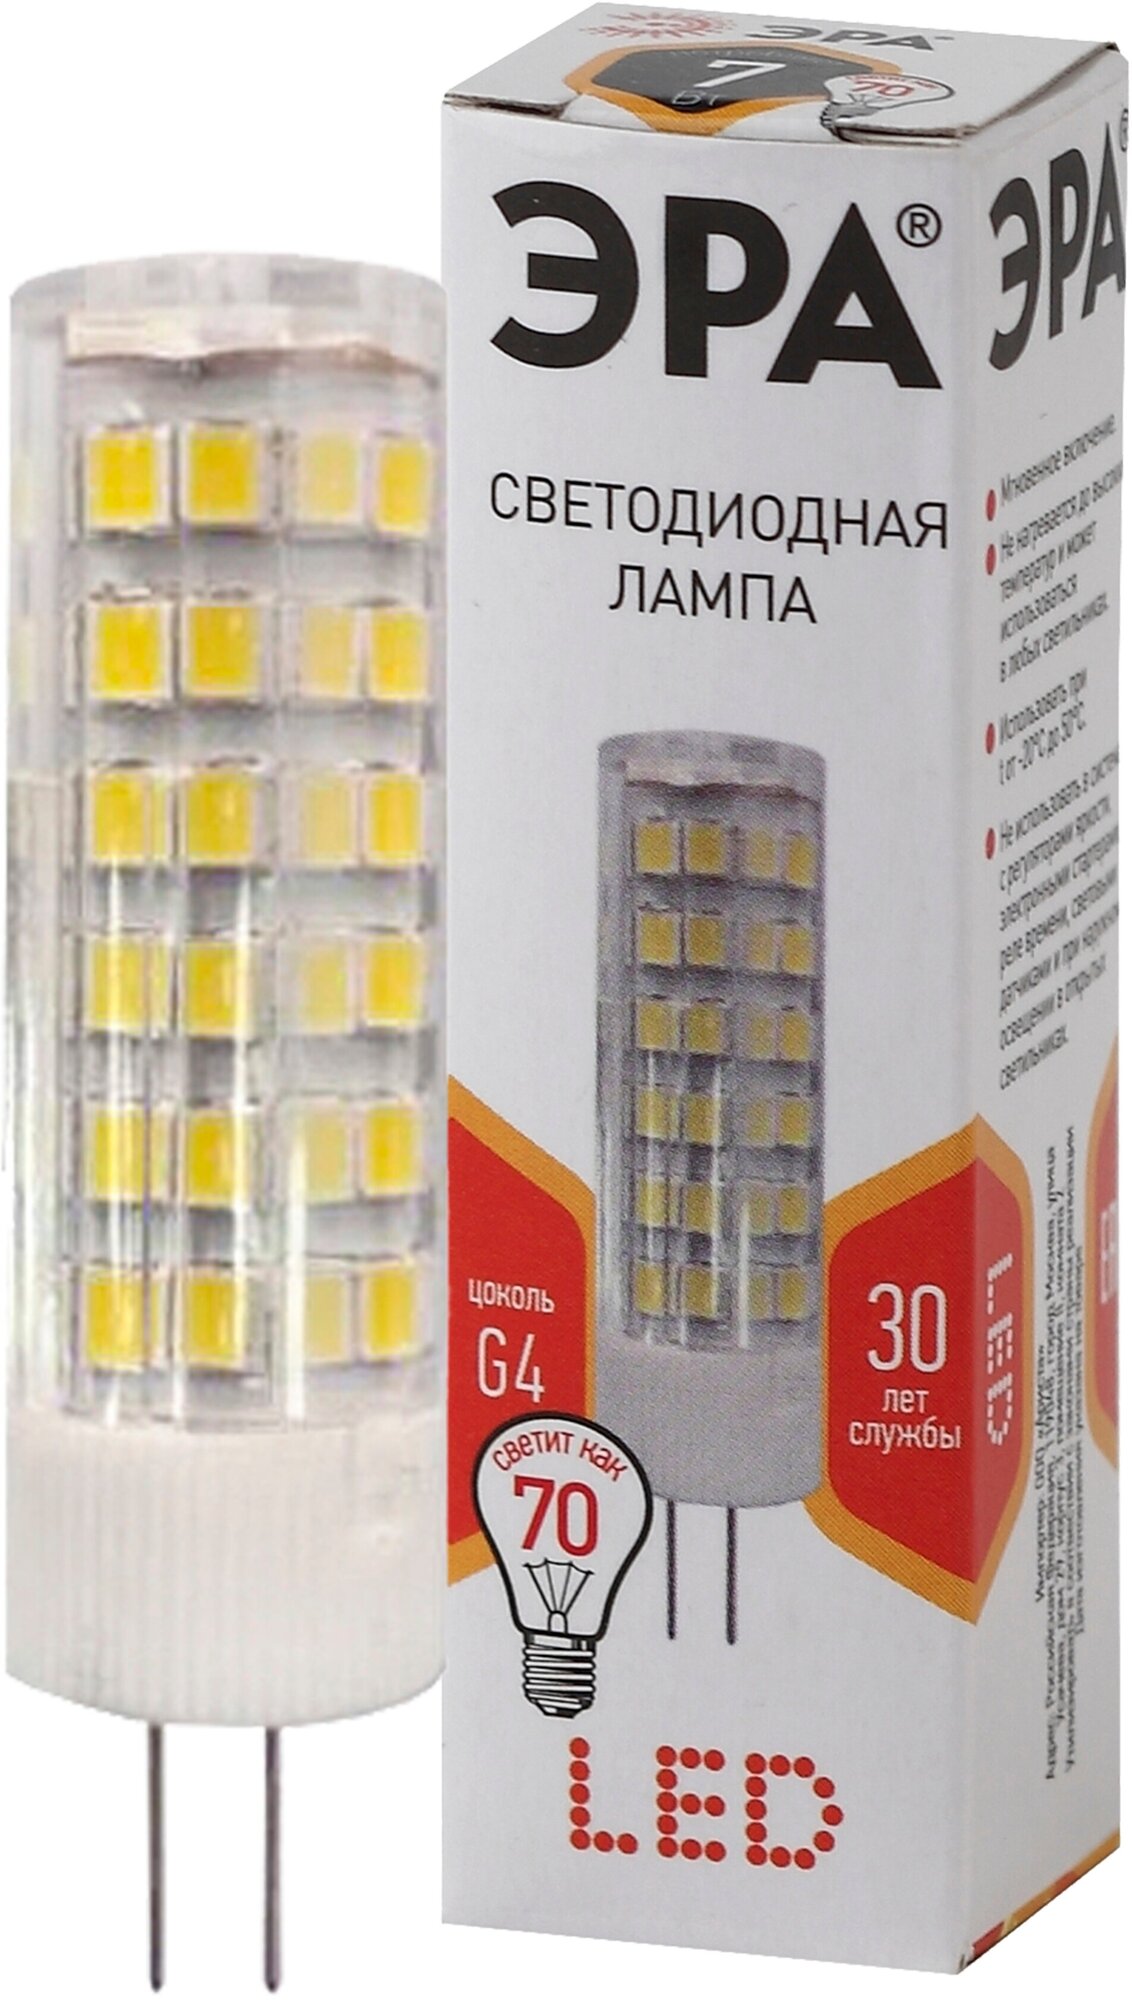 Лампочка светодиодная ЭРА STD LED JC-7W-220V-CER-827-G4 G4 7Вт керамика капсула теплый белый свет арт. Б0027859 (1 шт.)